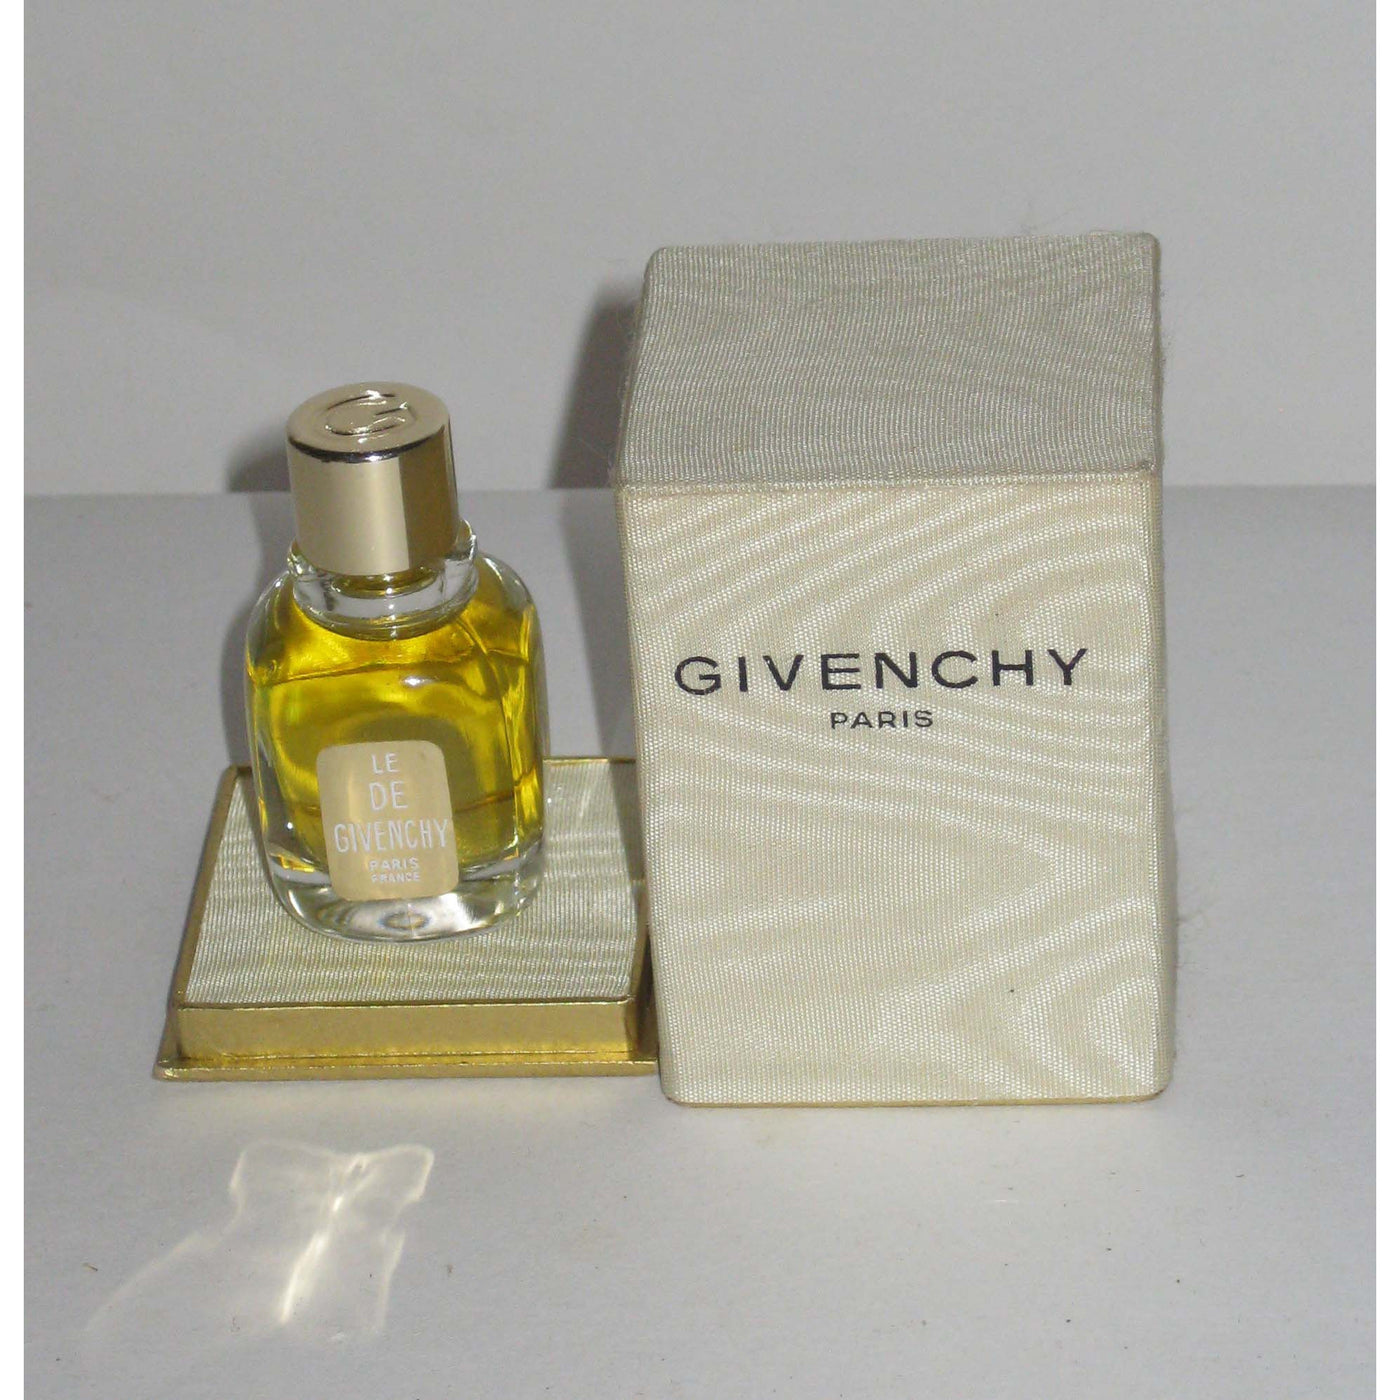 Vintage Le De Givenchy Parfum